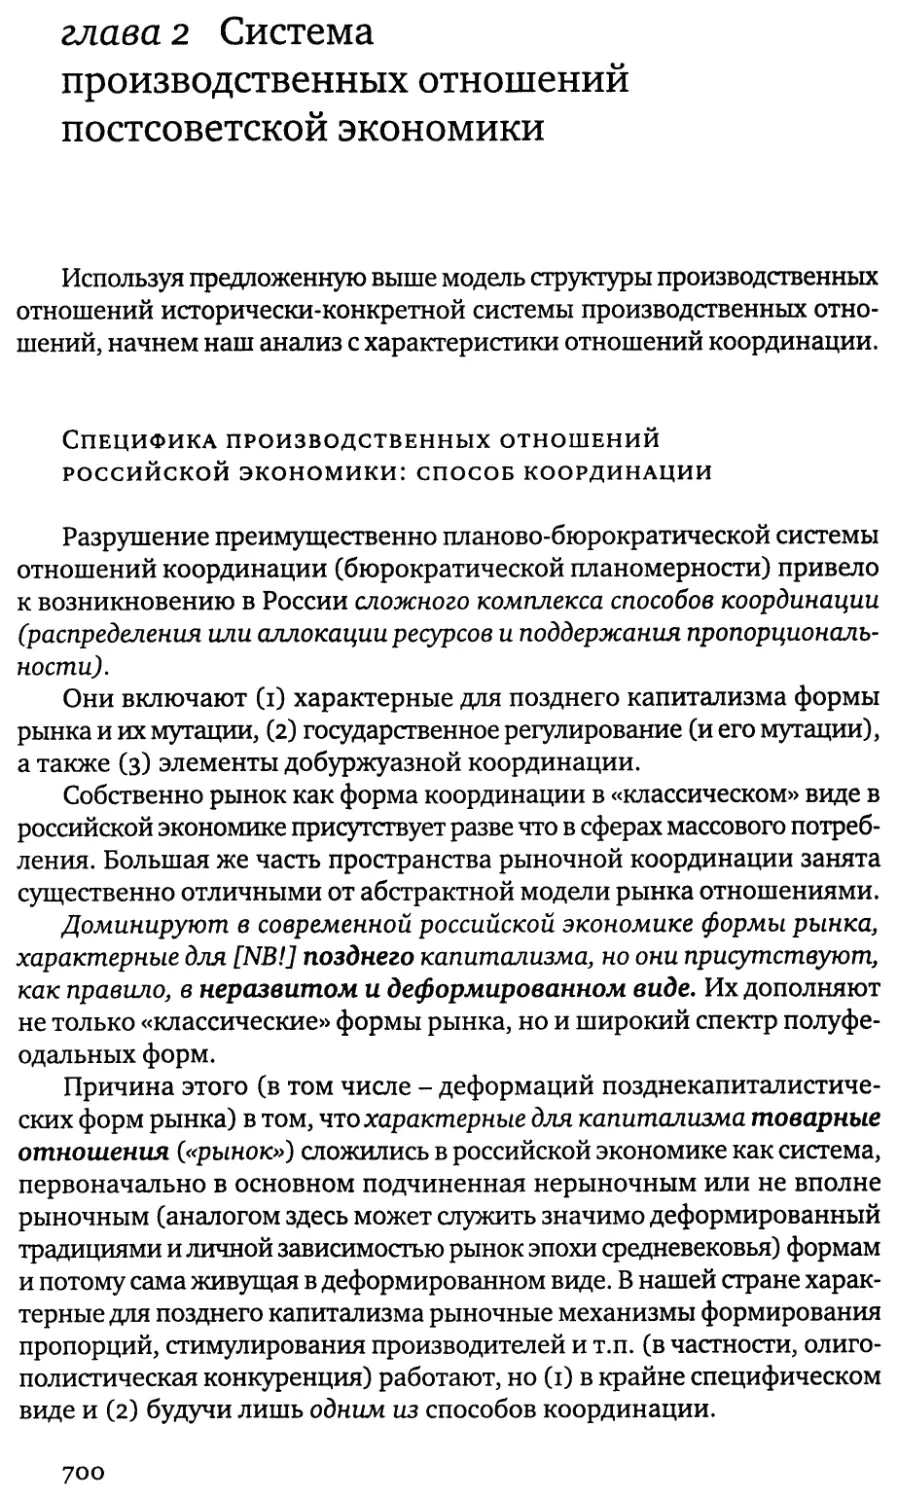 глава 2 Система производственных отношений постсоветской экономики